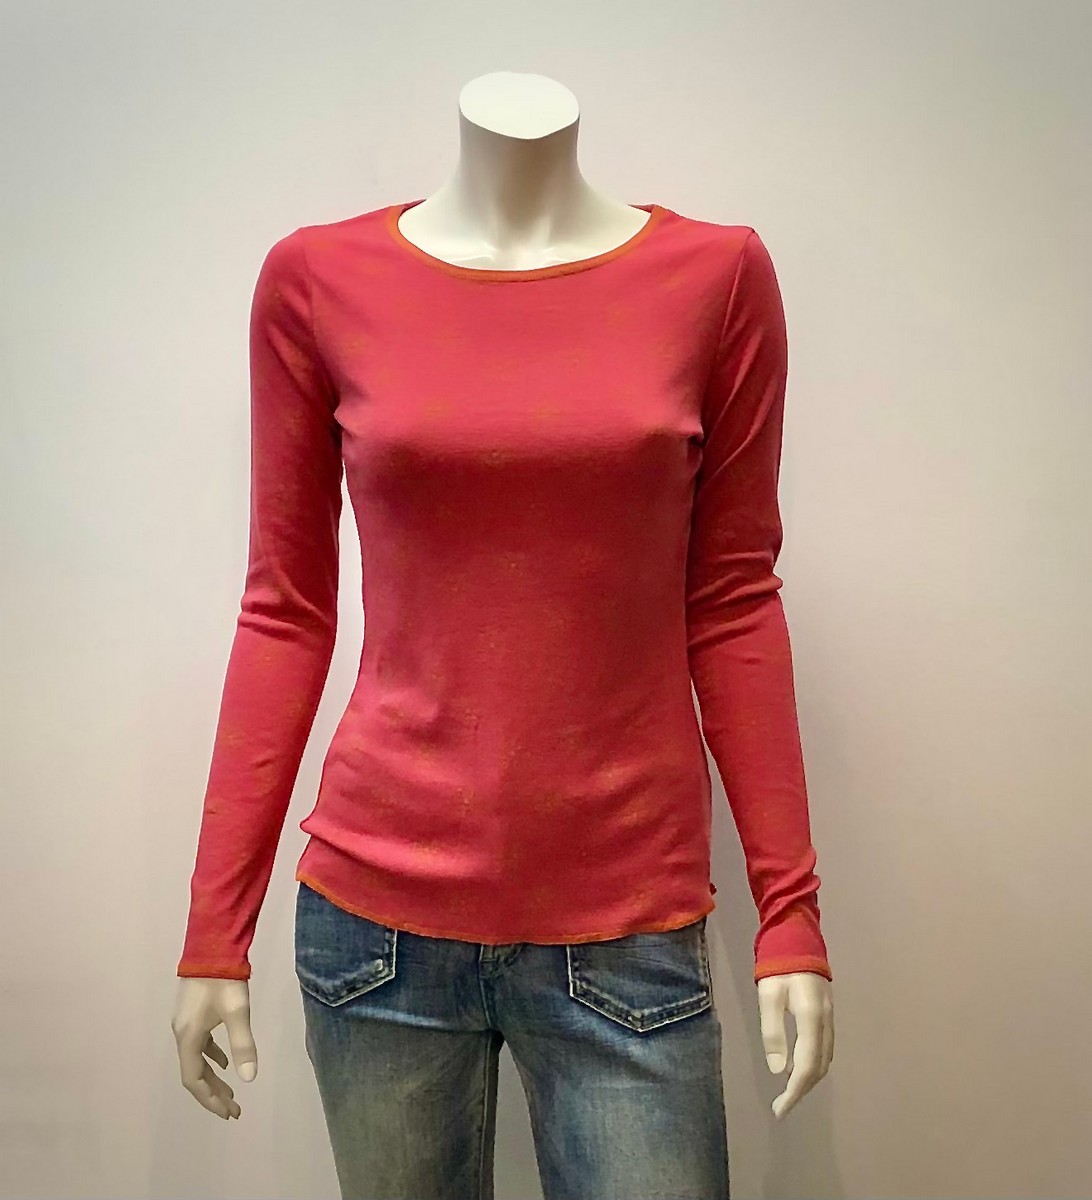 Shirt aus 100% Öko-Baumwolle in rot/orange gemustert von Jalfe